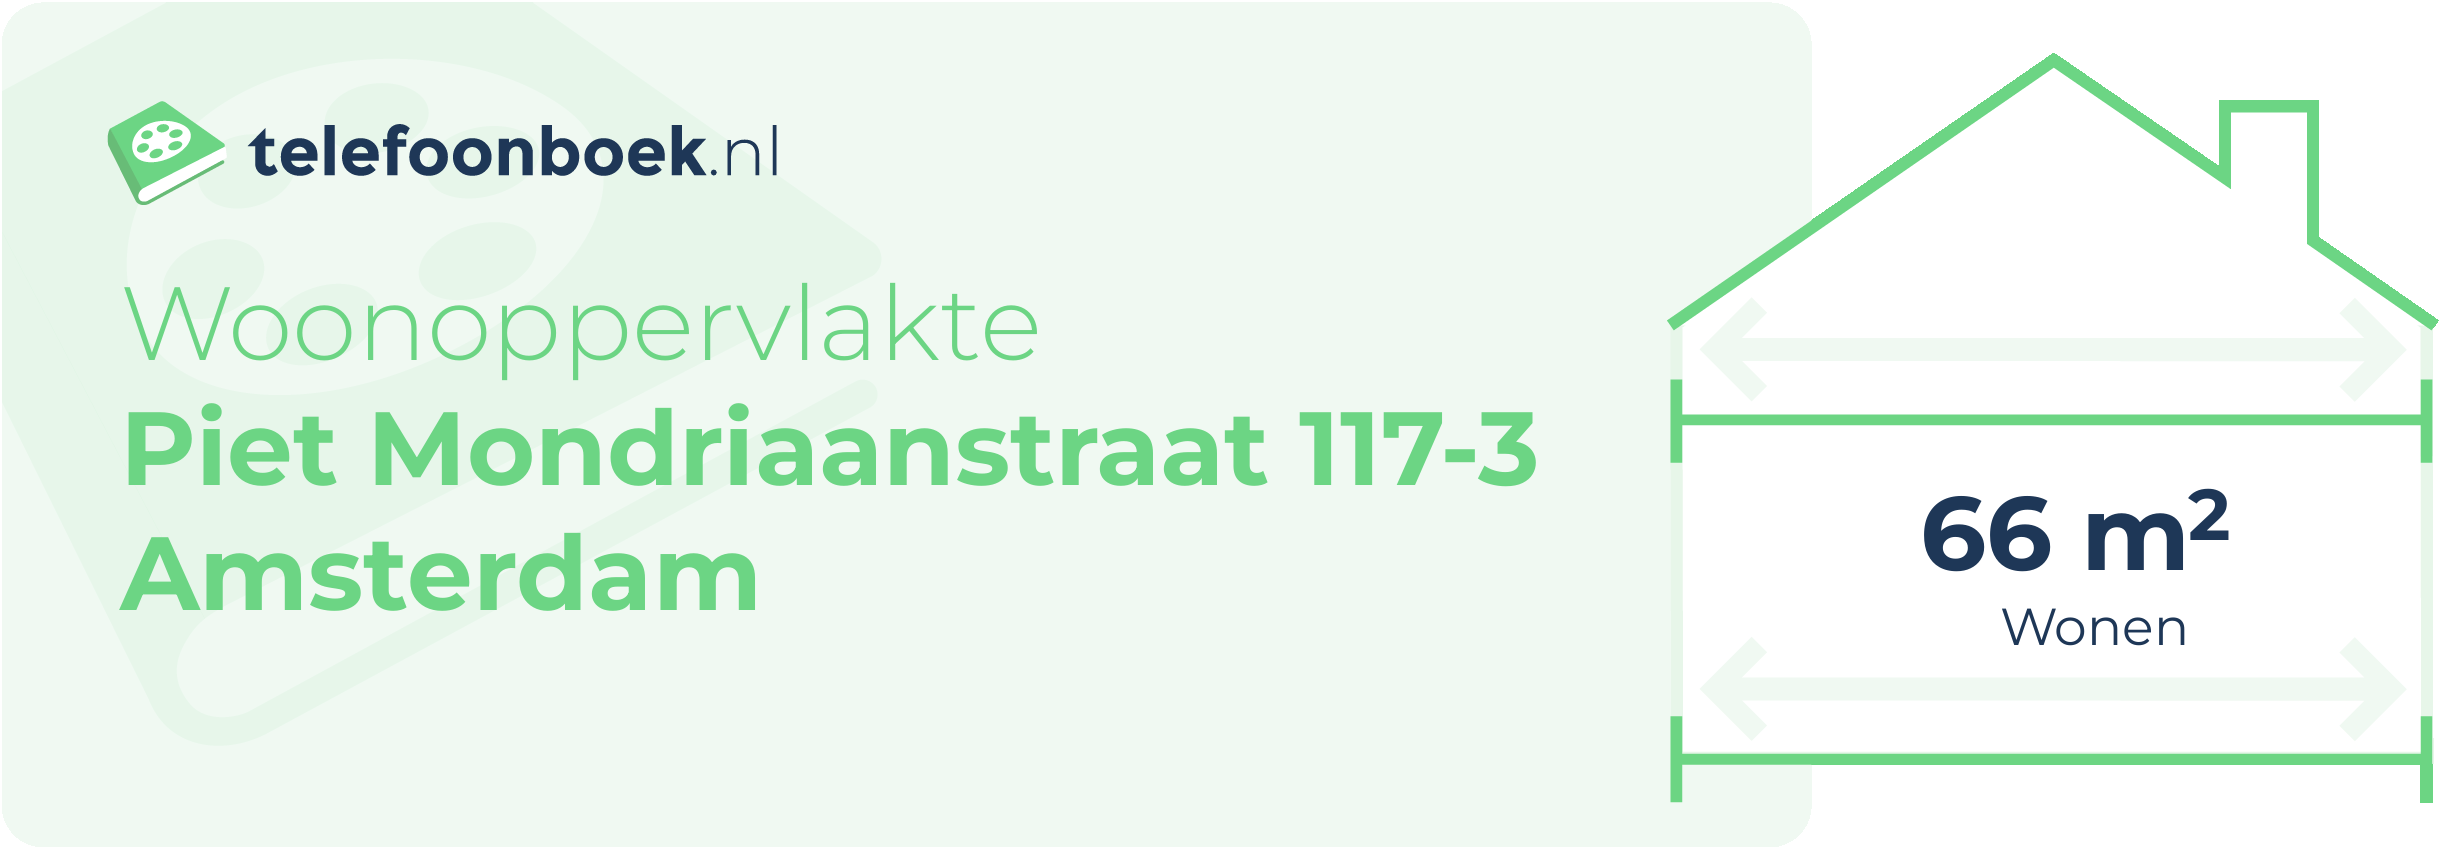 Woonoppervlakte Piet Mondriaanstraat 117-3 Amsterdam